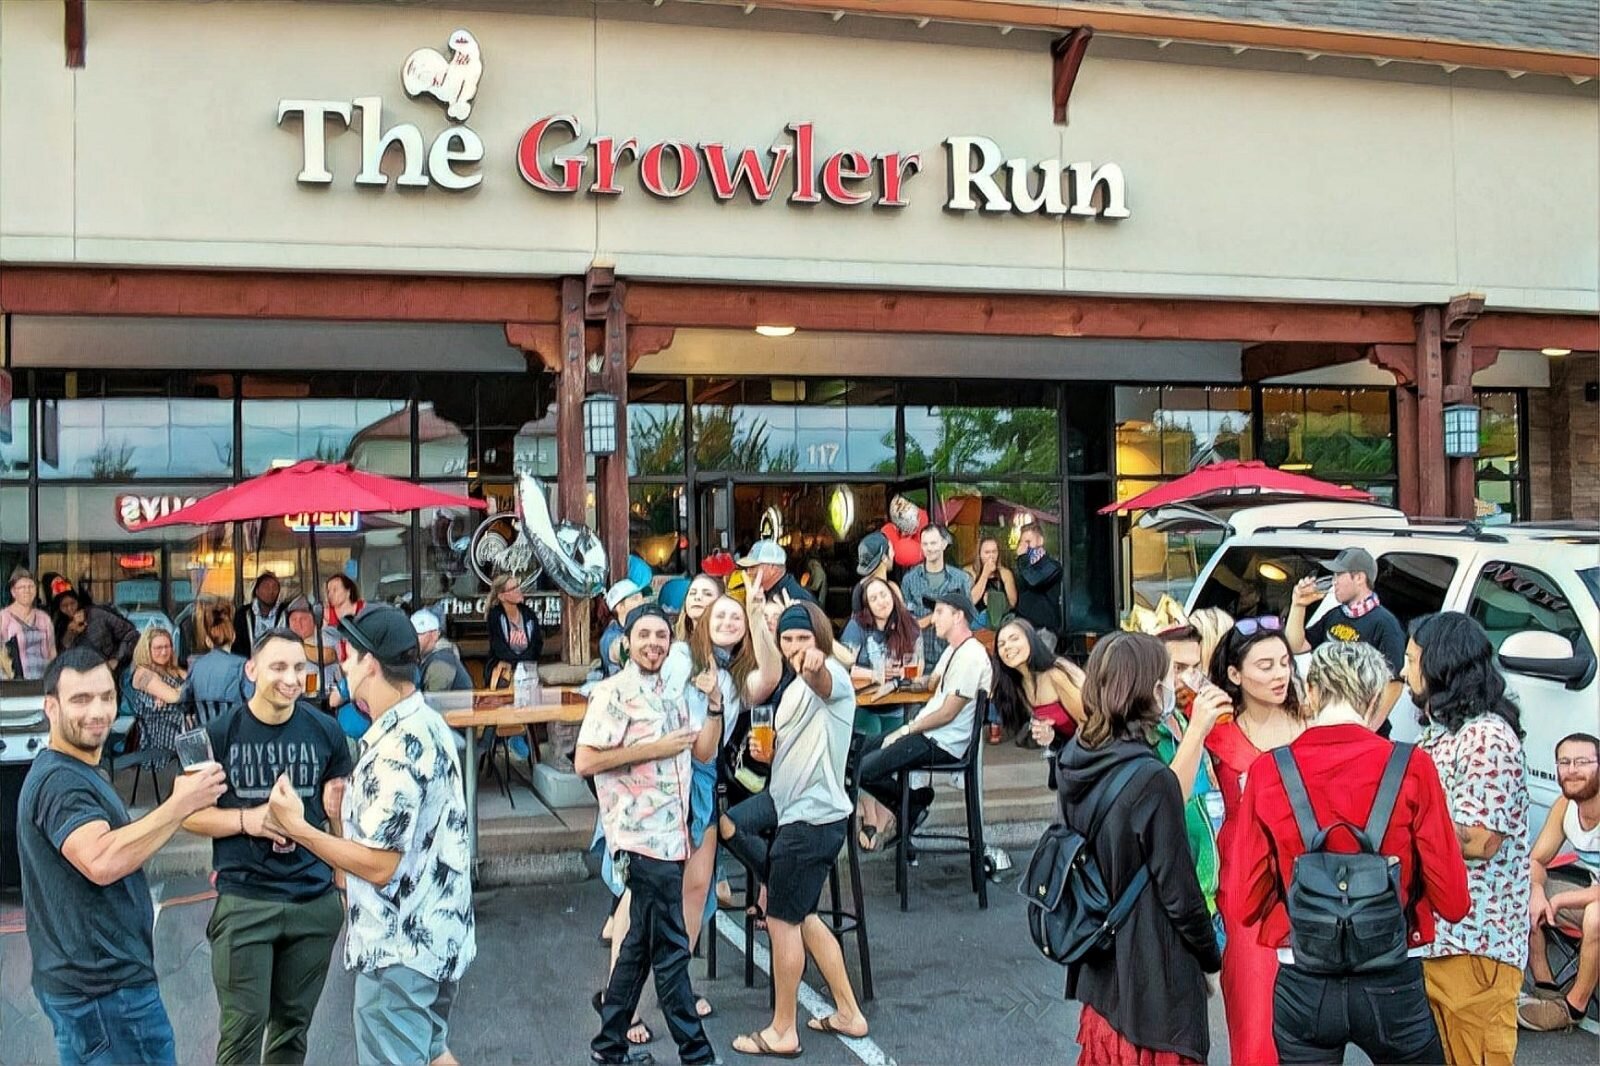 The Growler Run